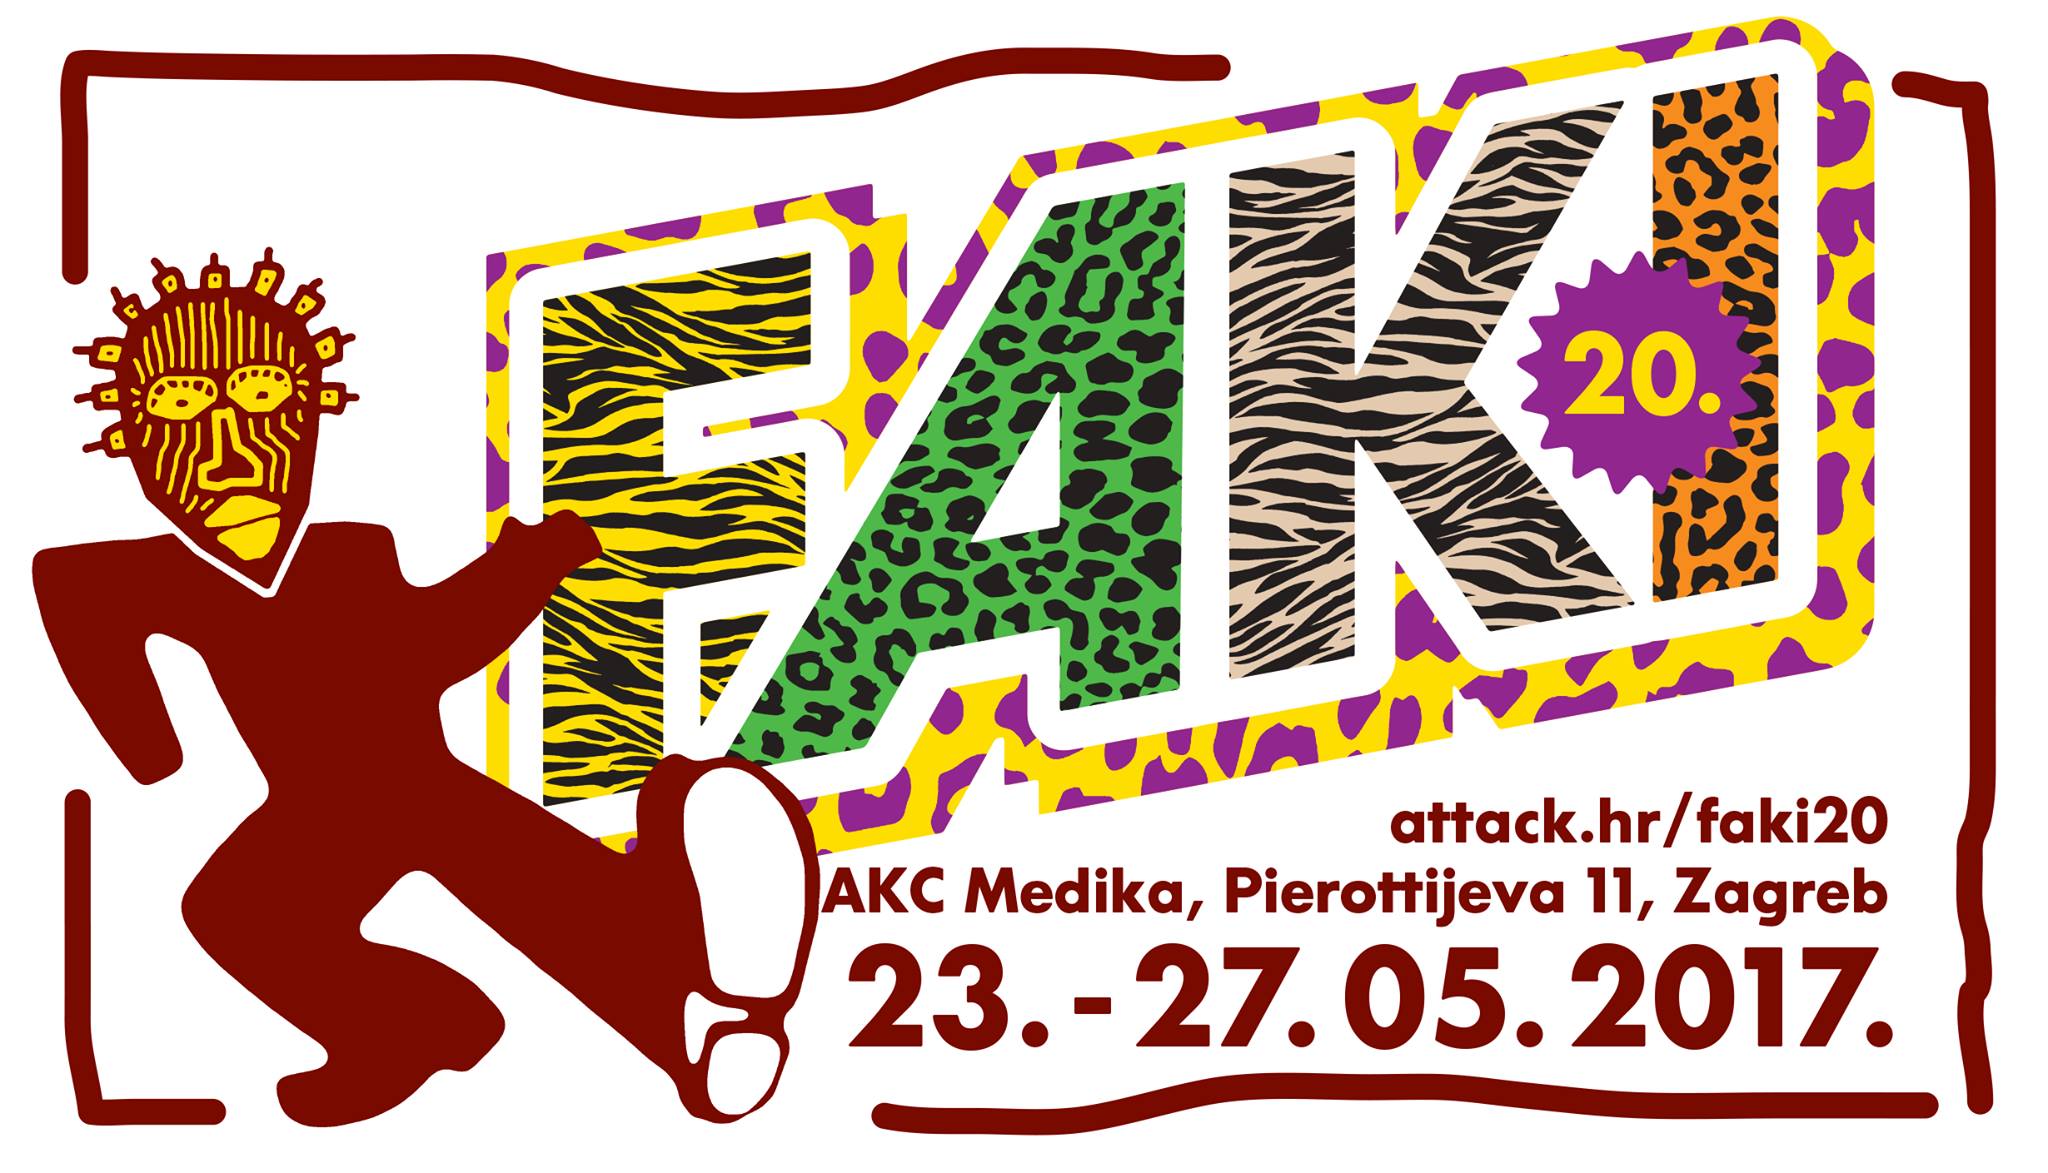 FAKI 20, Zagreb, 23-27.05.2017